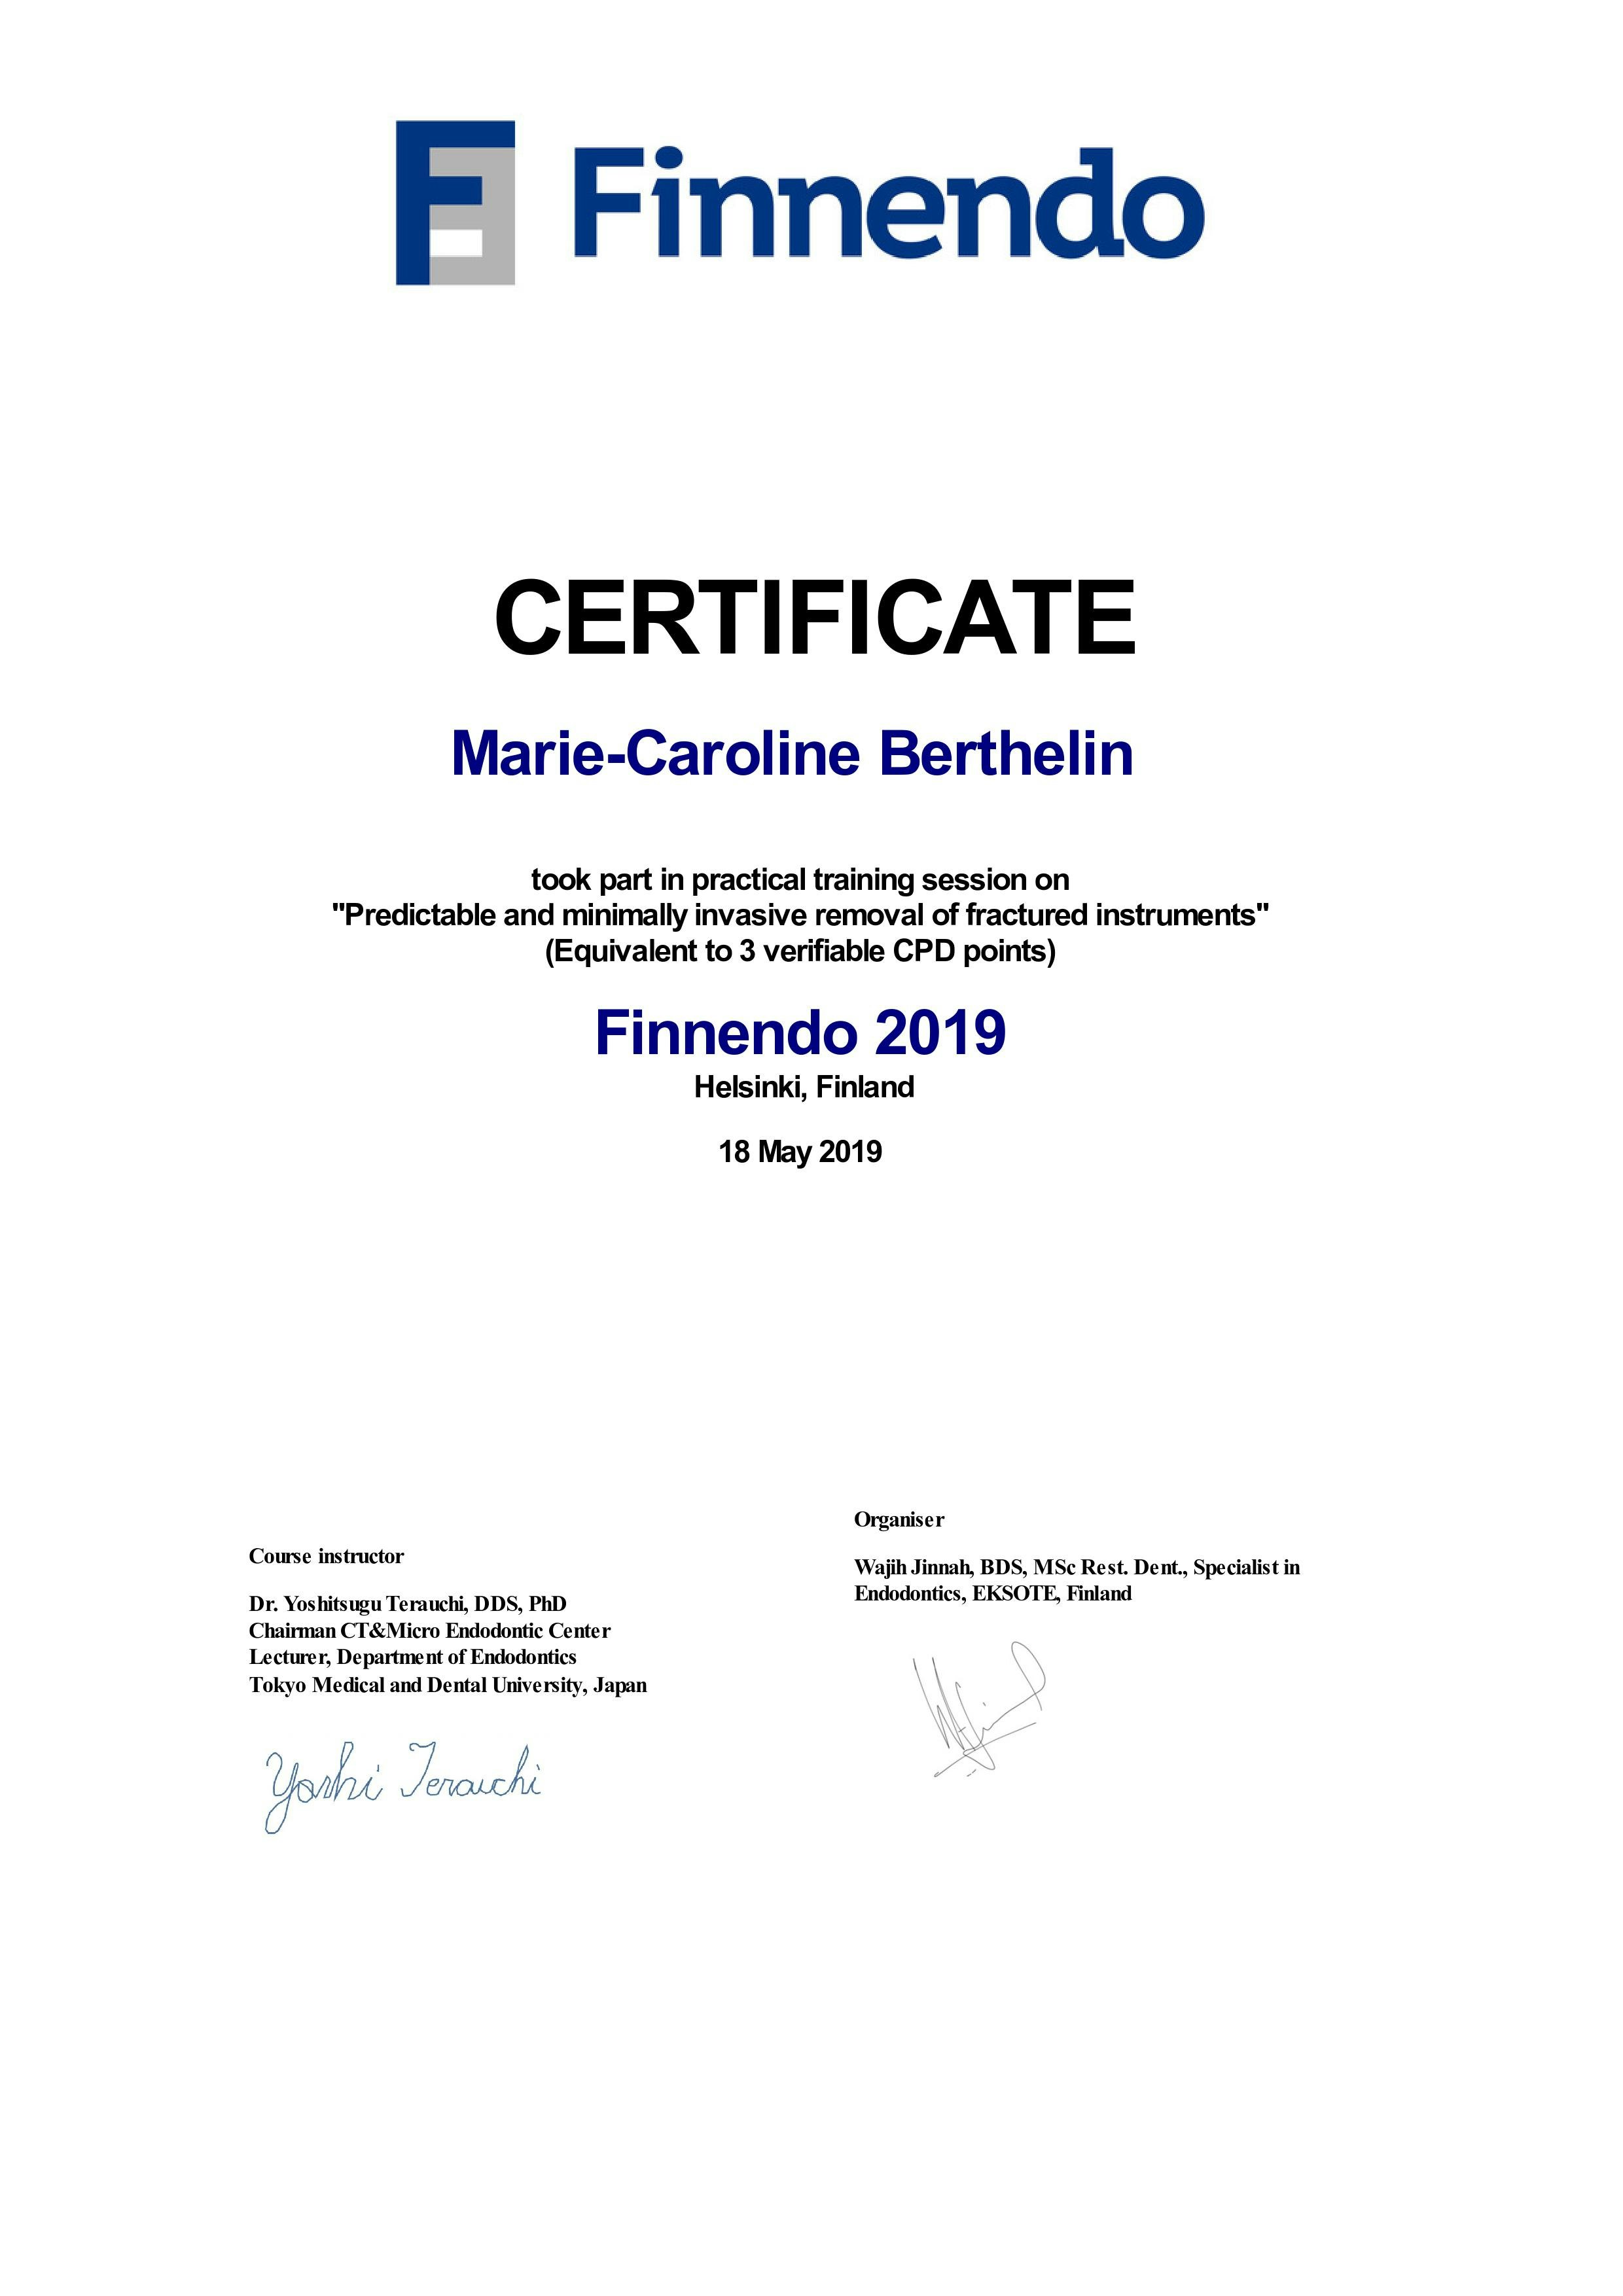 Finnendo Certificate